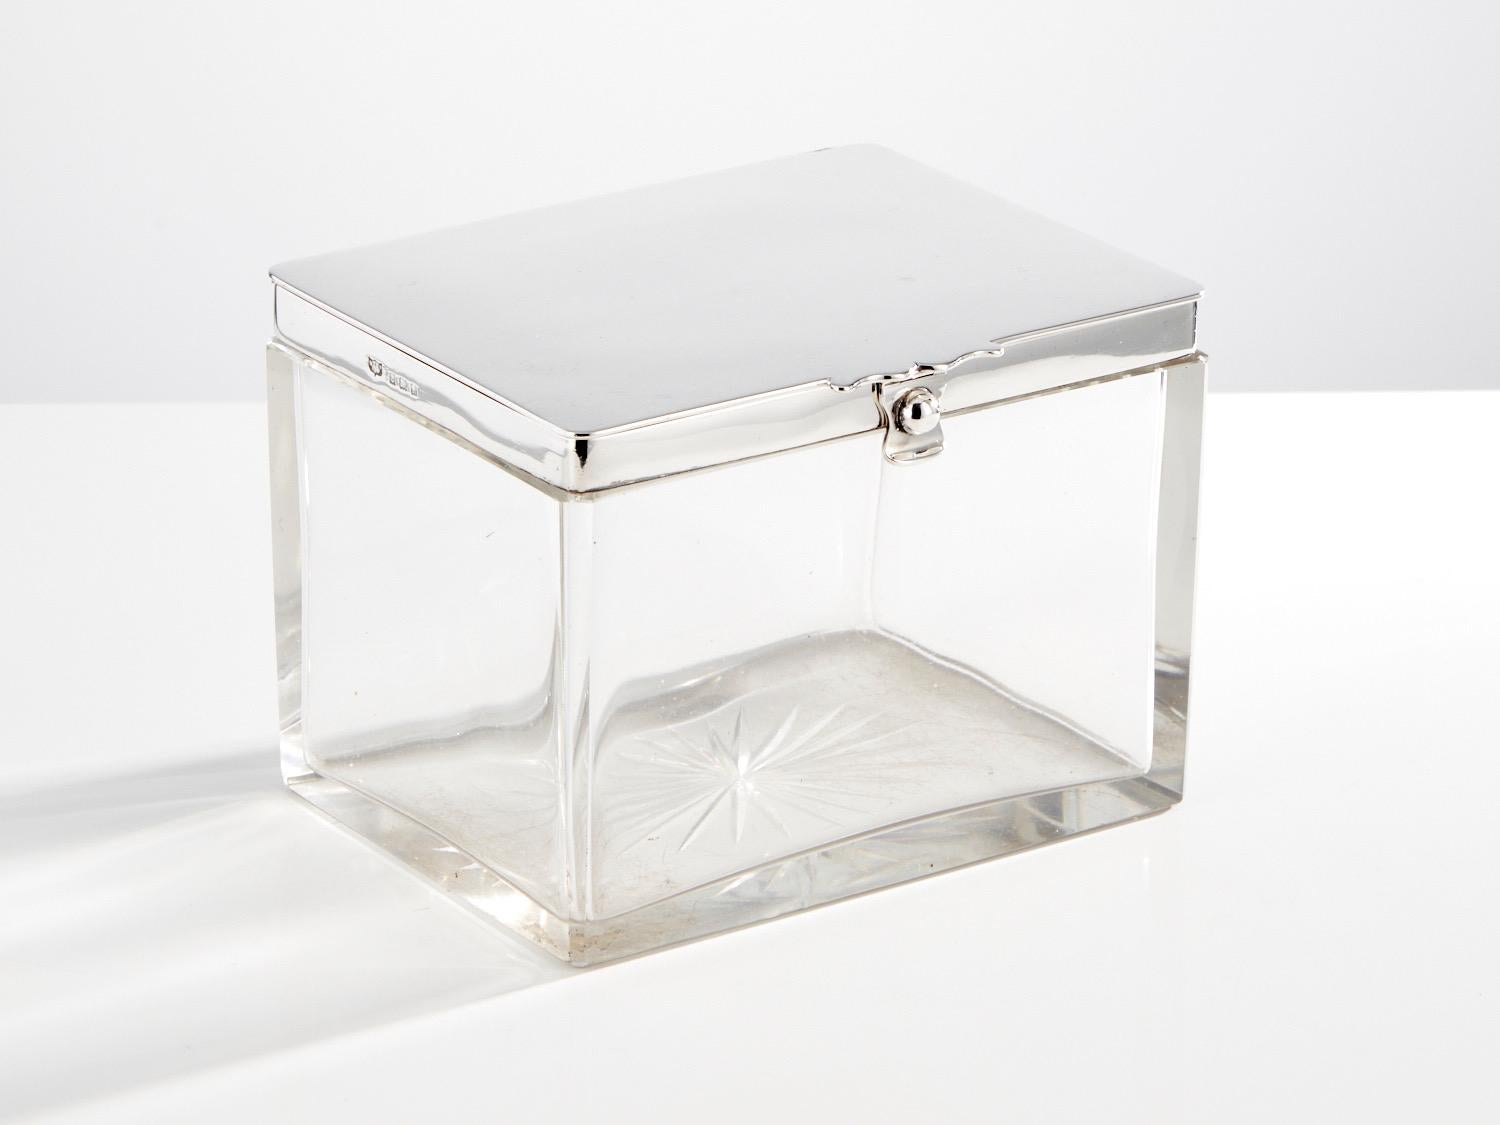 Eine wunderschöne große antike Glas- und Silberdose von Mappin & Webb Birmingham 1912.

Es handelt sich um ein hochwertiges Stück, das sich hervorragend als dekoratives Bargeschirr oder für den Tisch eignet.
Der Deckel ist ein gutes Maß Silber